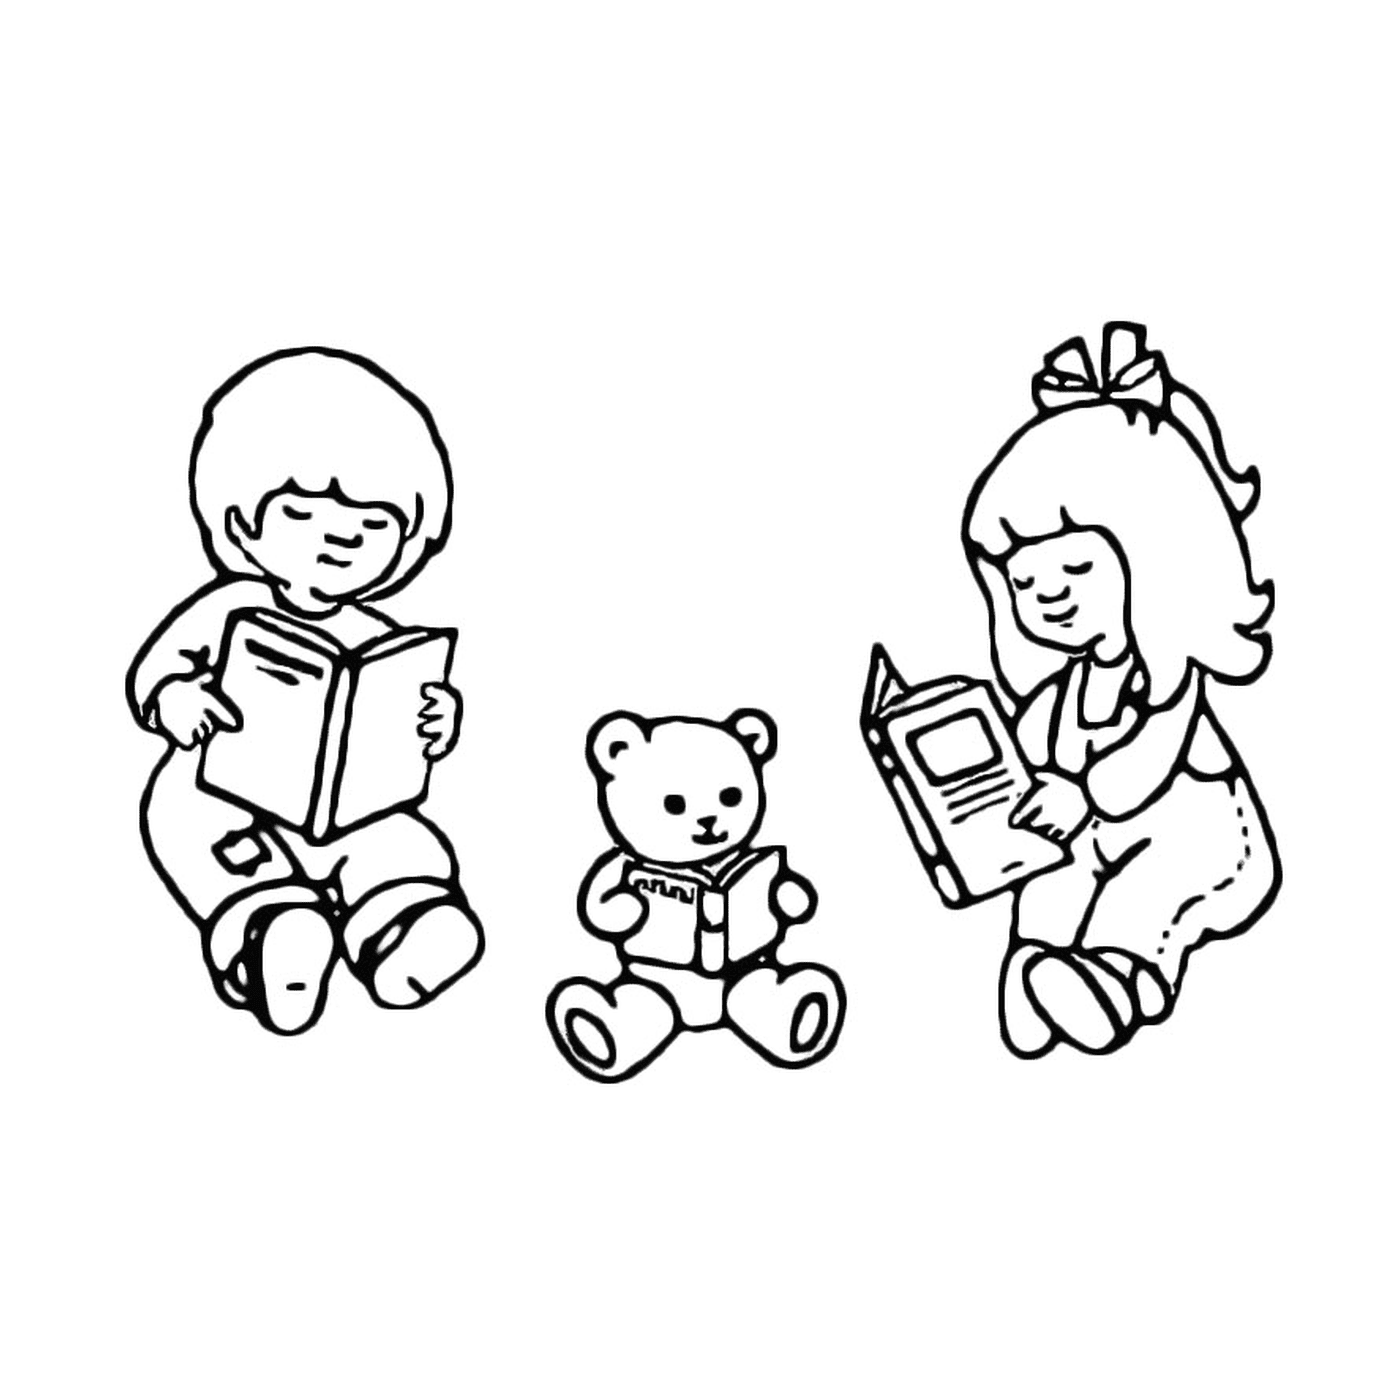  Tre bambini leggono un libro con un orsacchiotto 